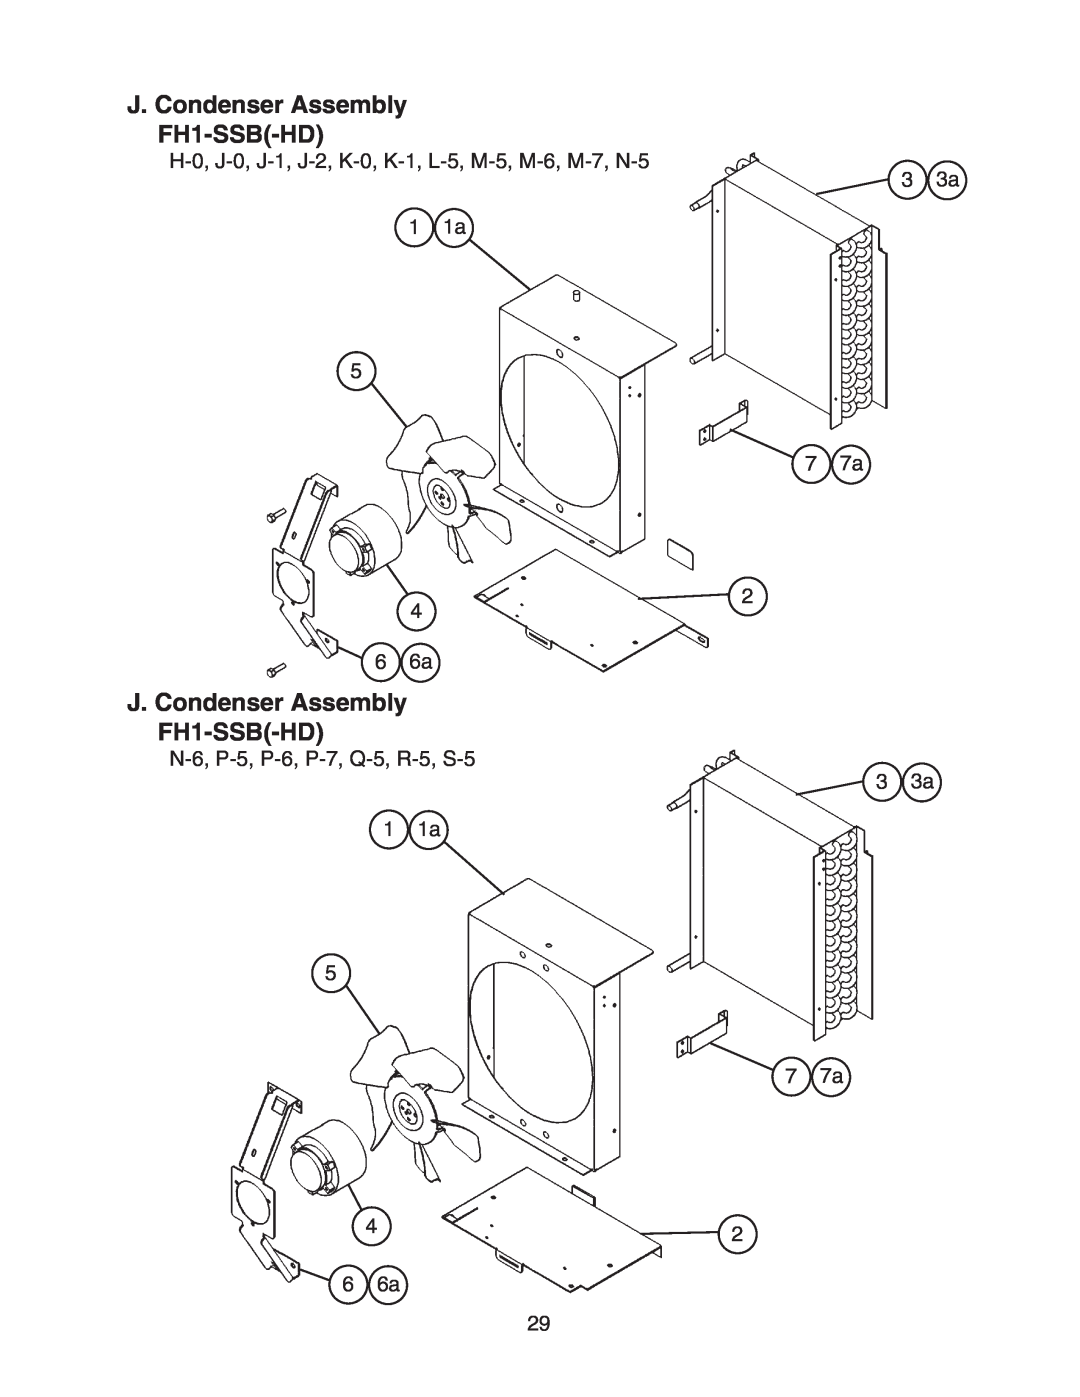 Hoshizaki FH1-SSB(-HD) manual J. Condenser Assembly FH1-SSB-HD, N-6, P-5, P-6, P-7, Q-5, R-5, S-5 1 1a 5 4 6 6a 